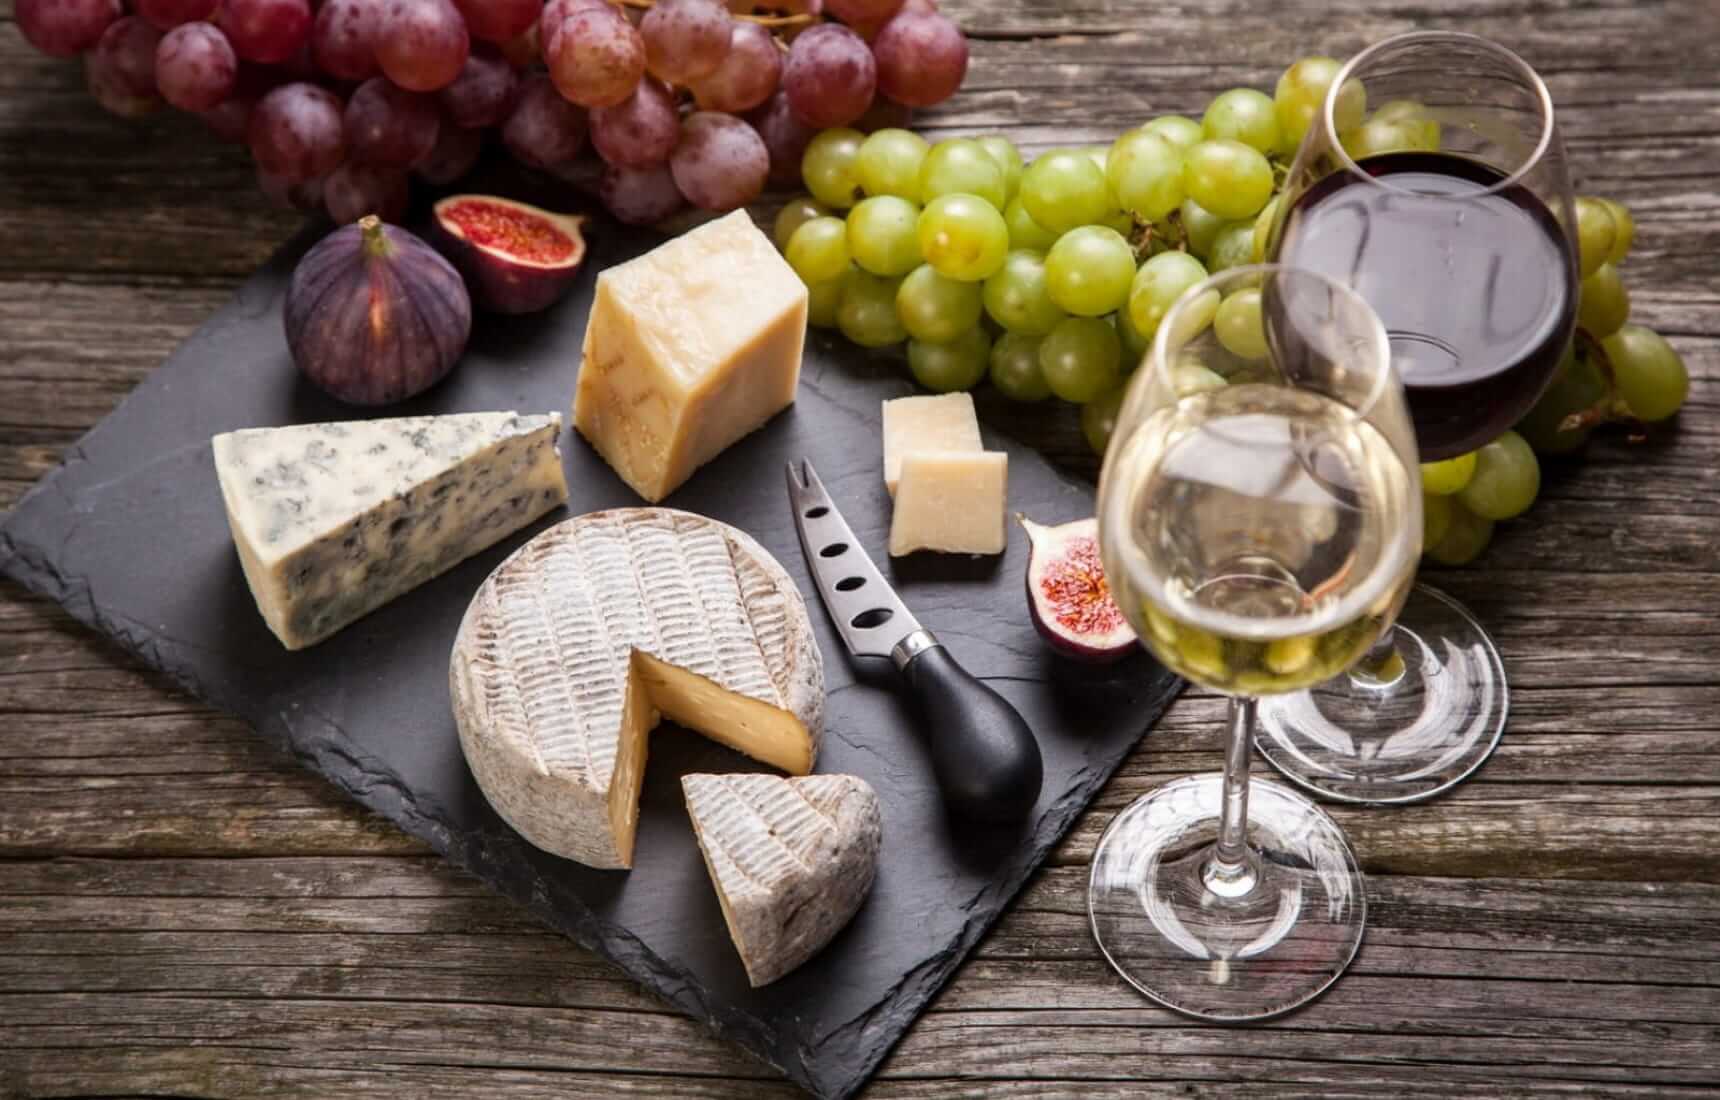 Wijn en kaas: Een klassieke combinatie